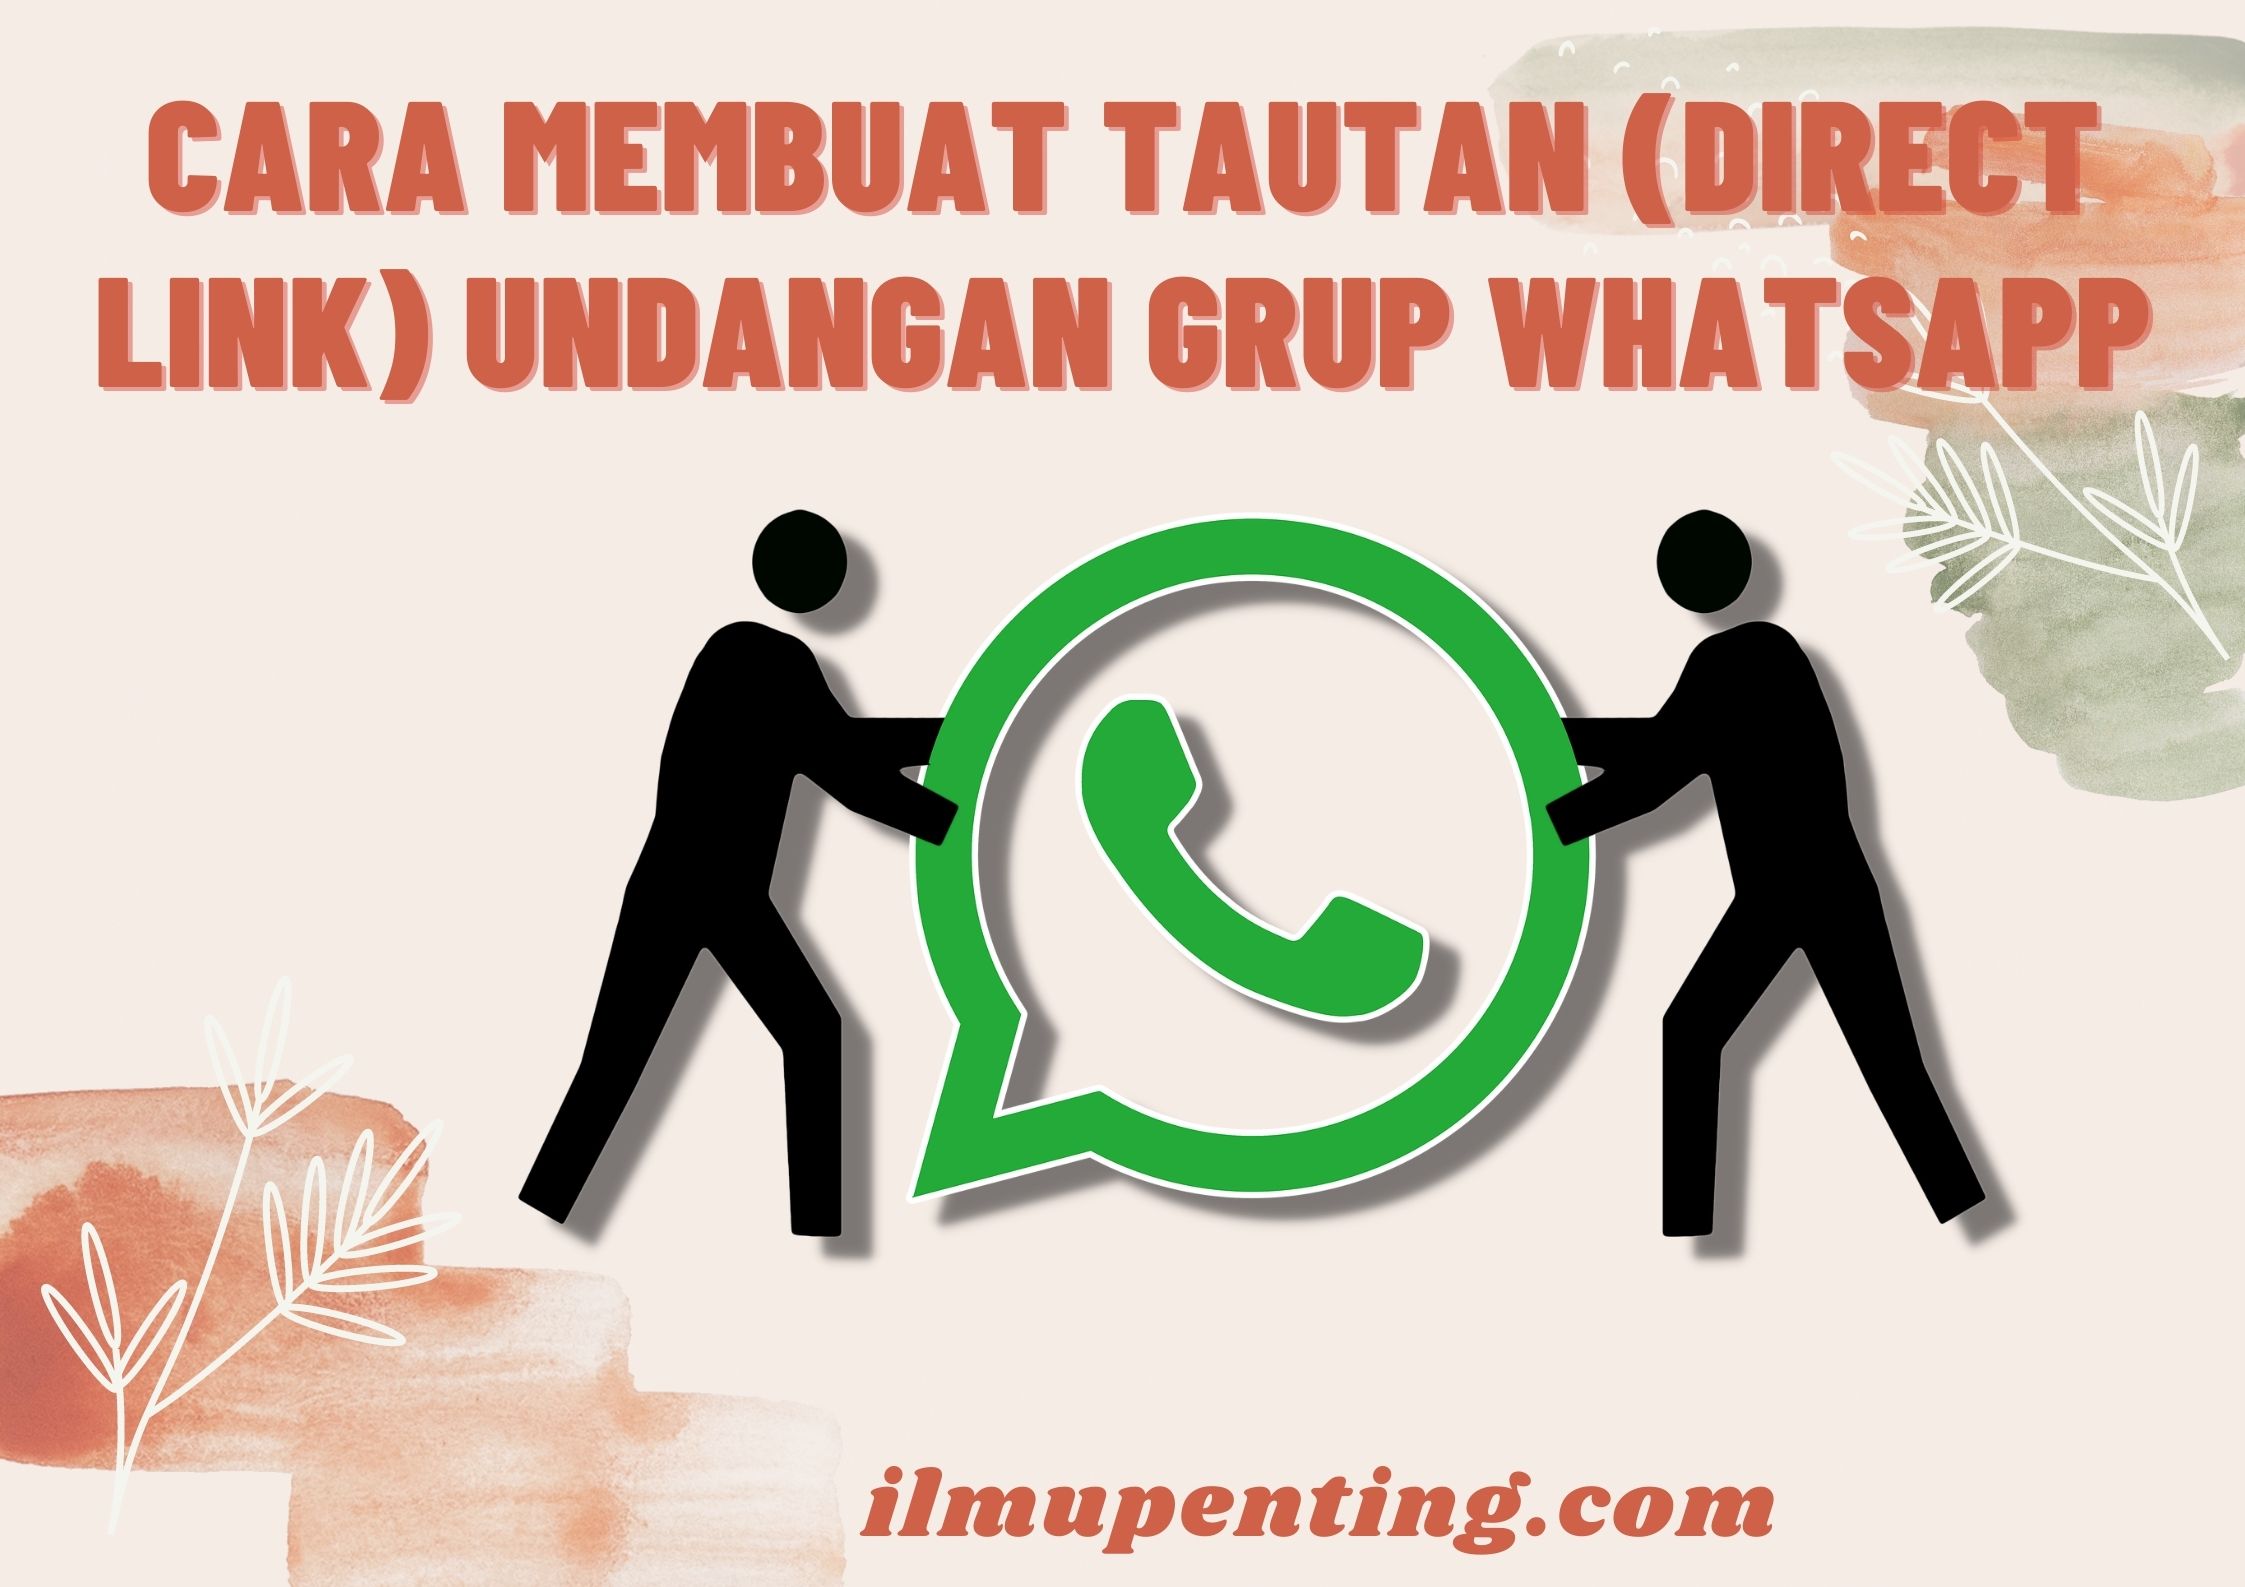 Cara Membuat Tautan (Direct Link) Undangan Grup WhatsApp